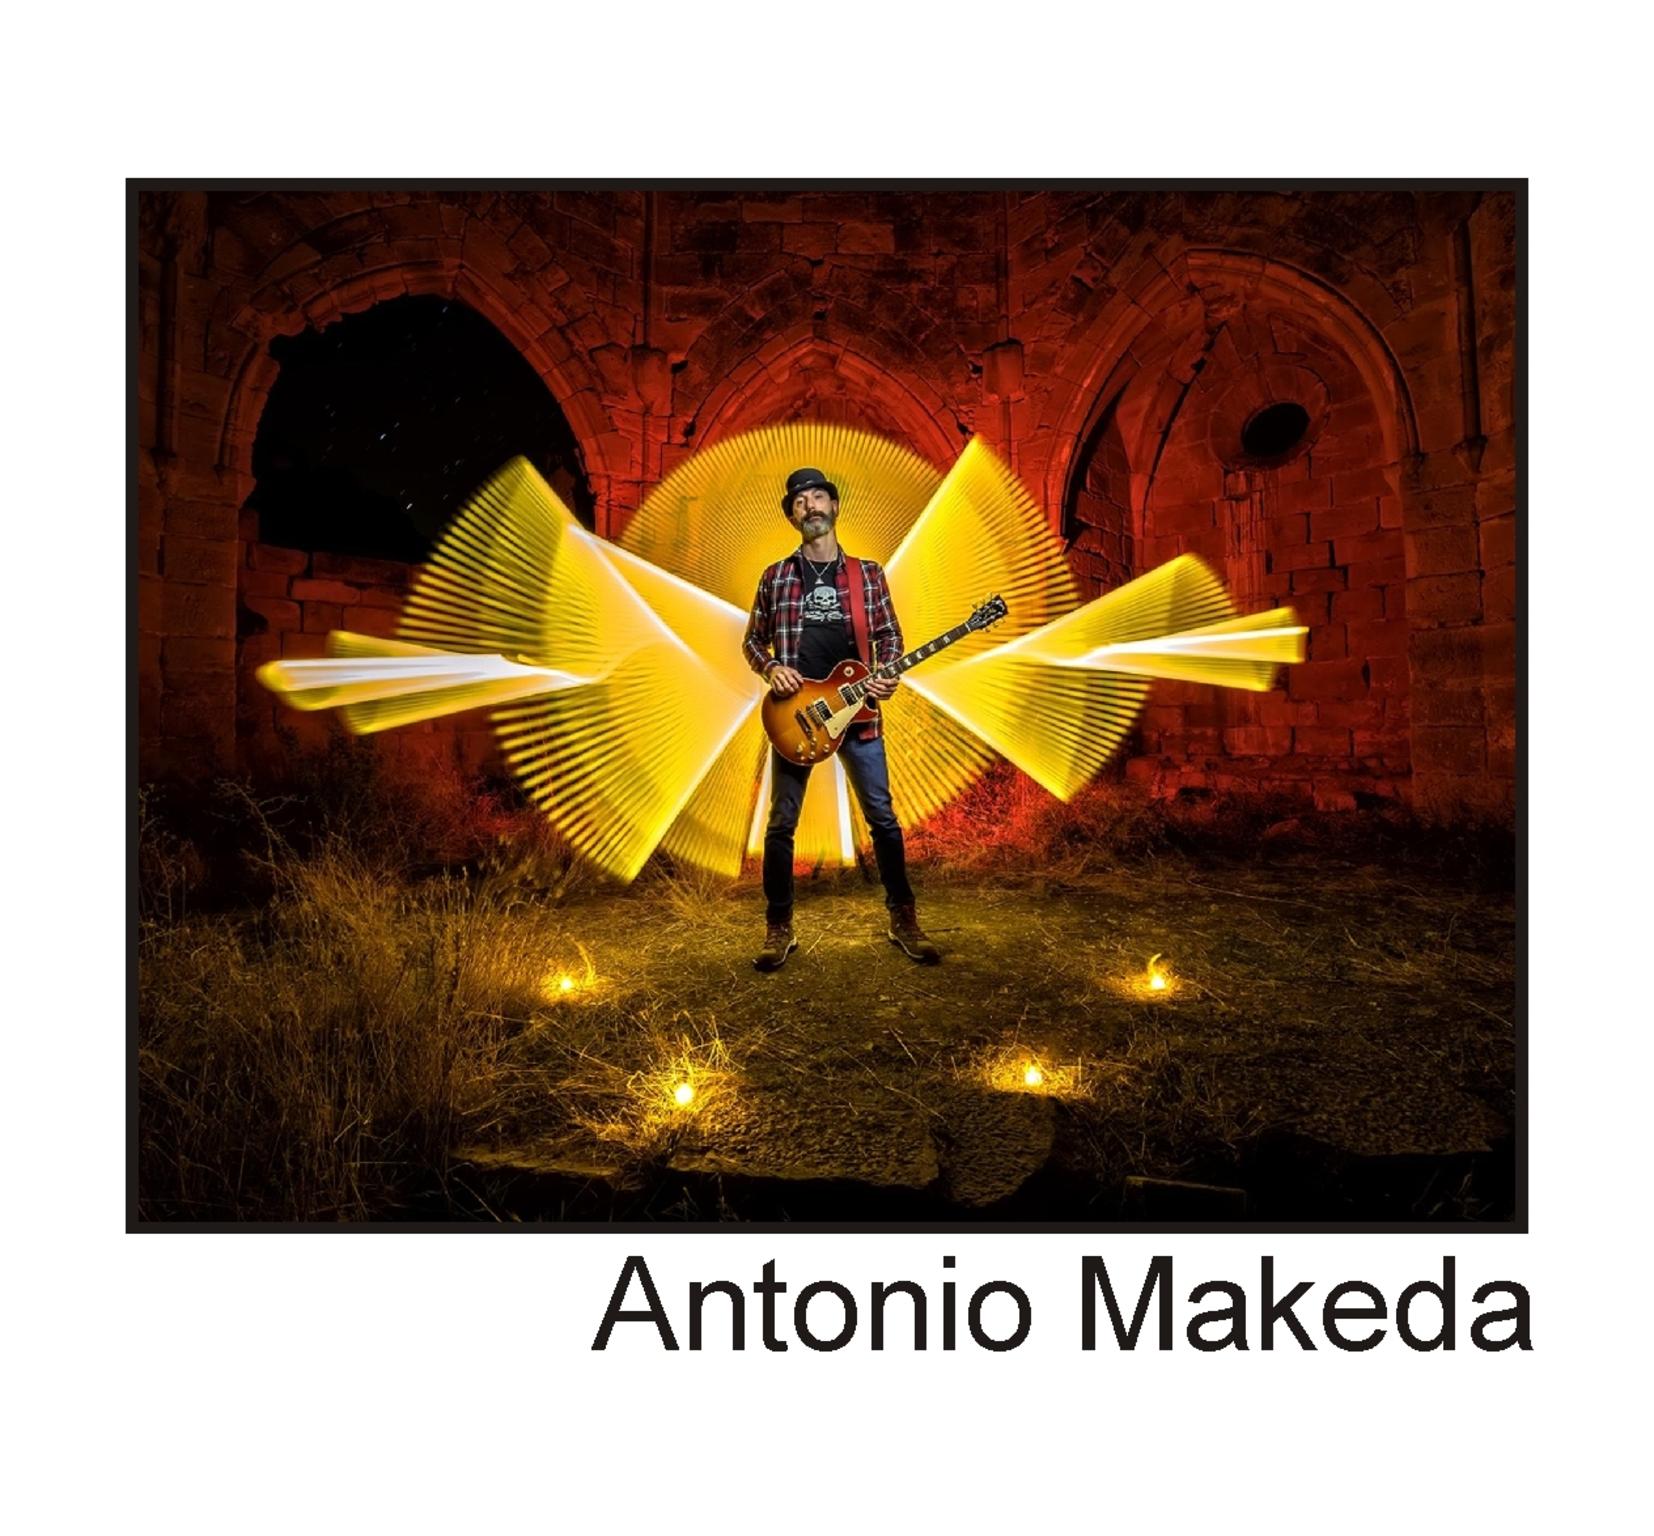  Antonio Makeda